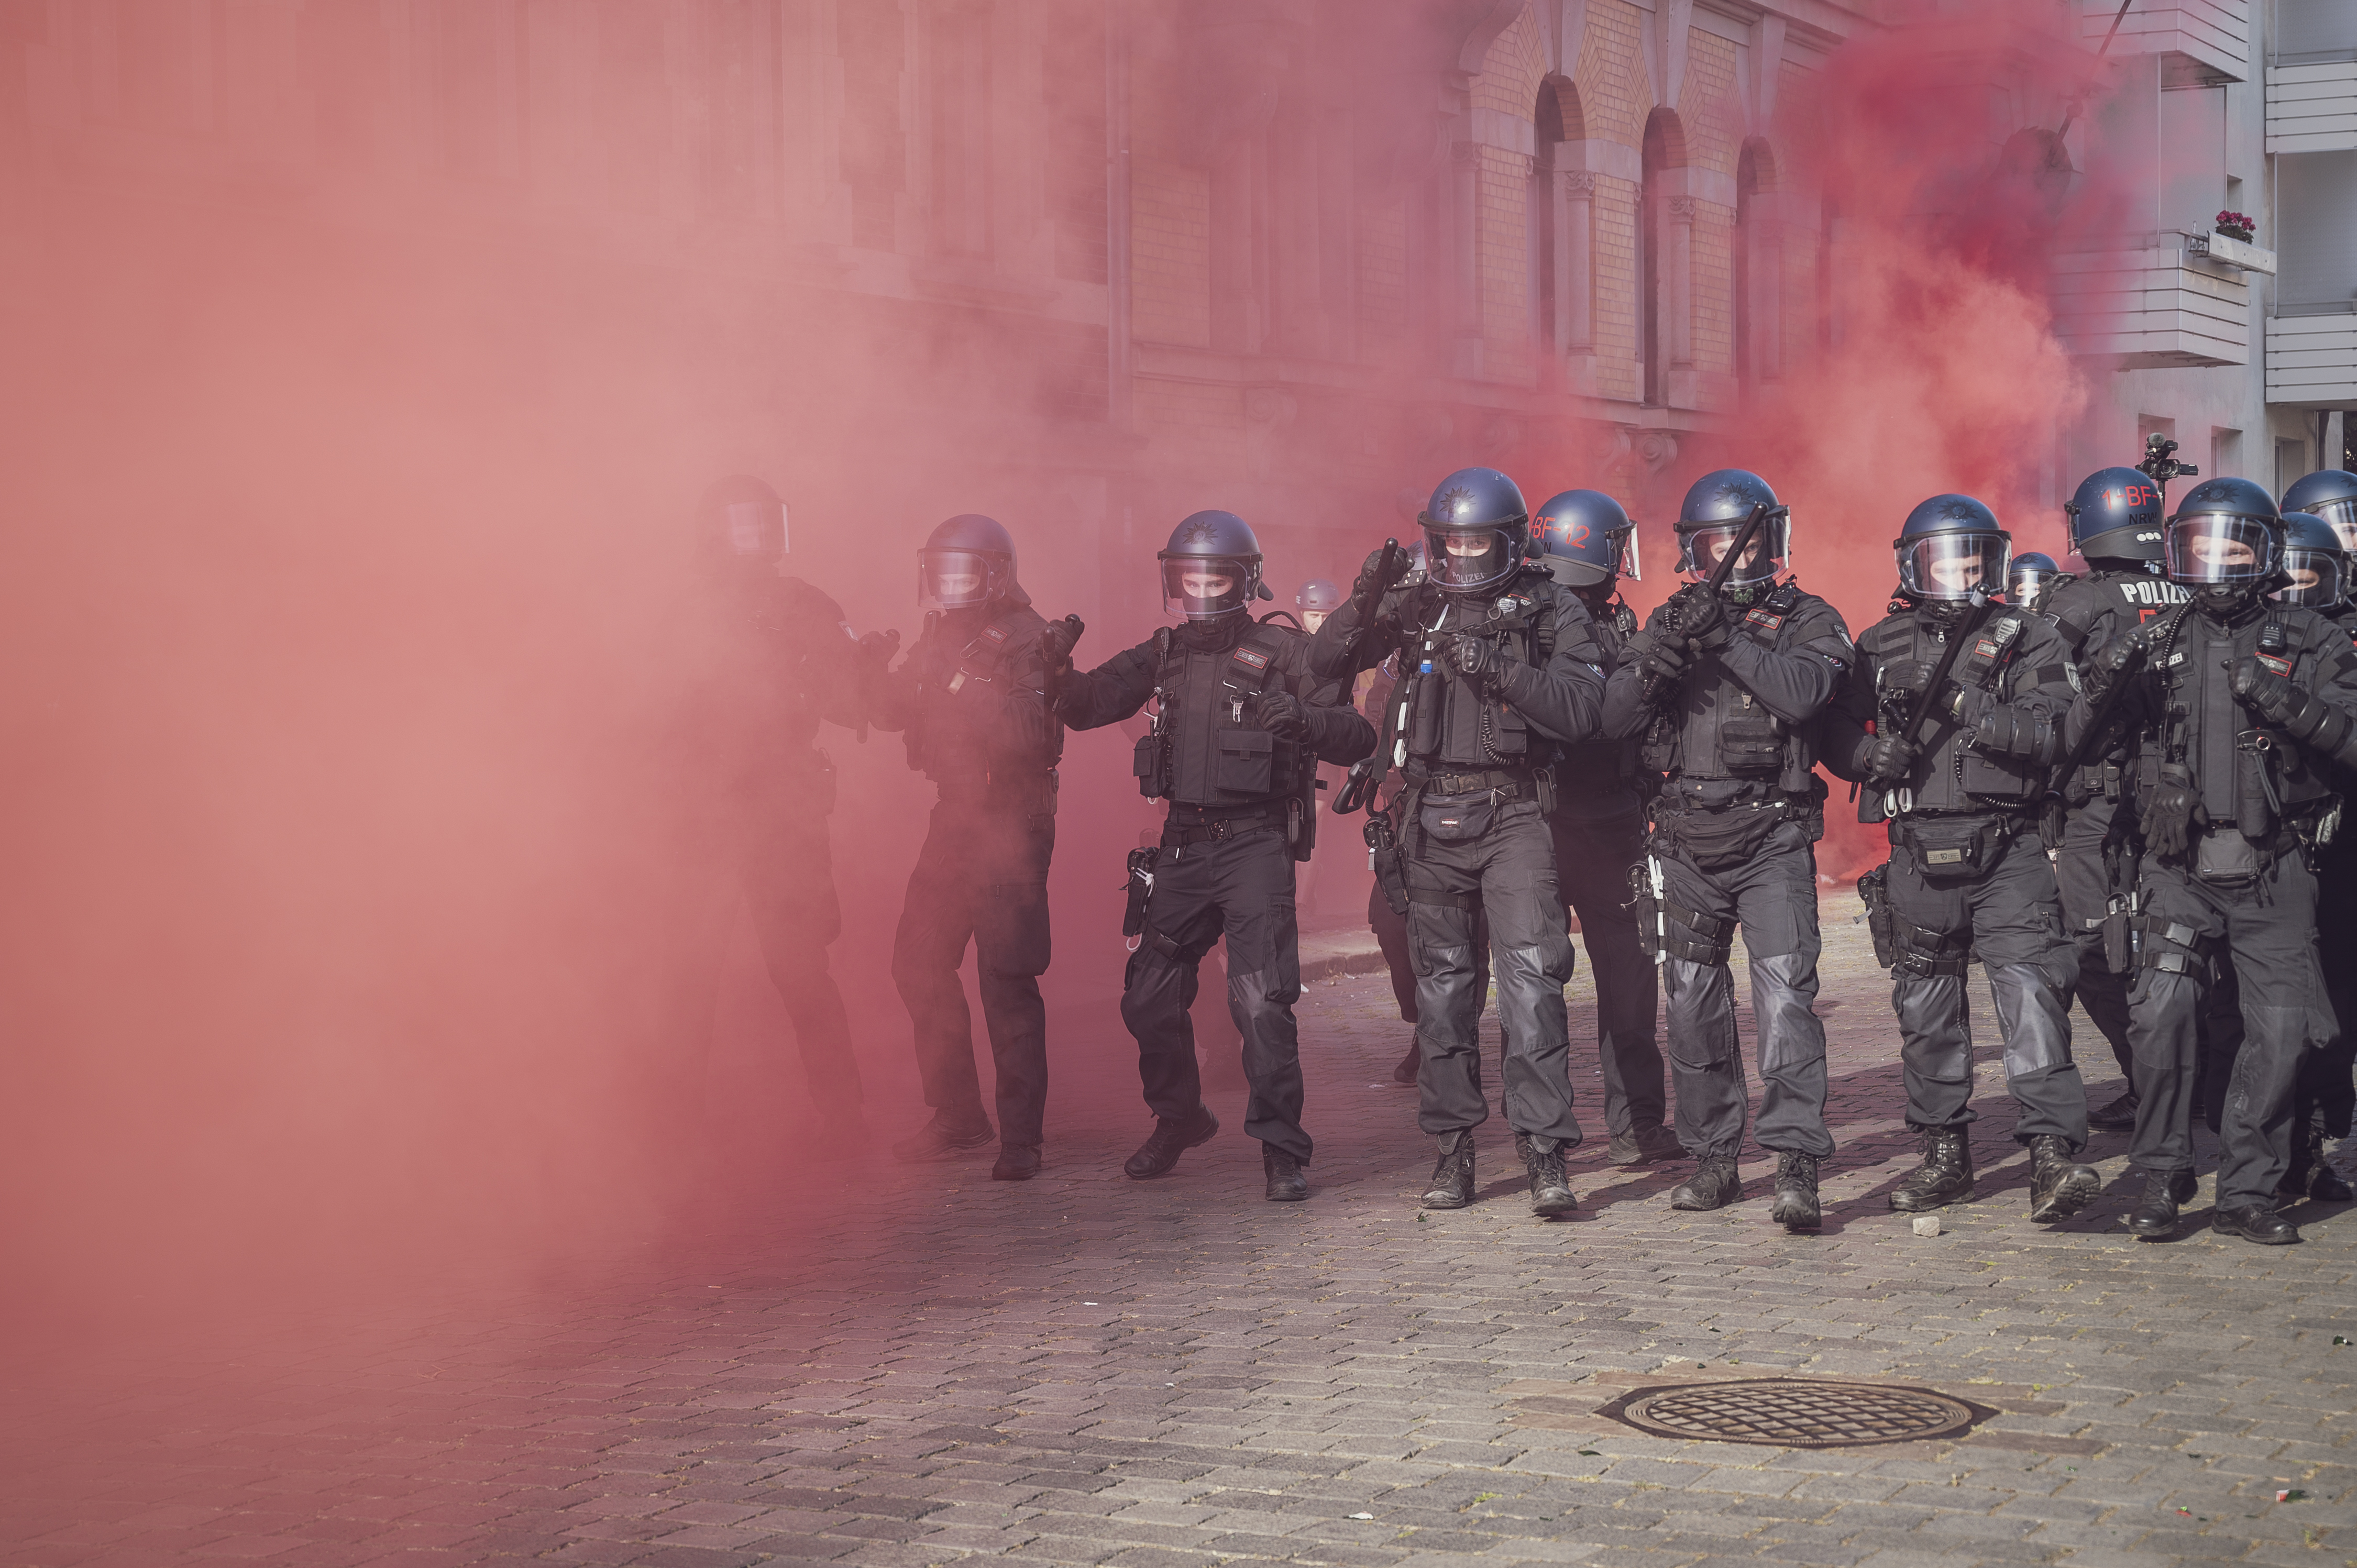   Was soll das? | Die größte Bedrohung für den Rechtsstaat ging am vergangenen Wochenende von der Polizei und der Stadt Leipzig aus  